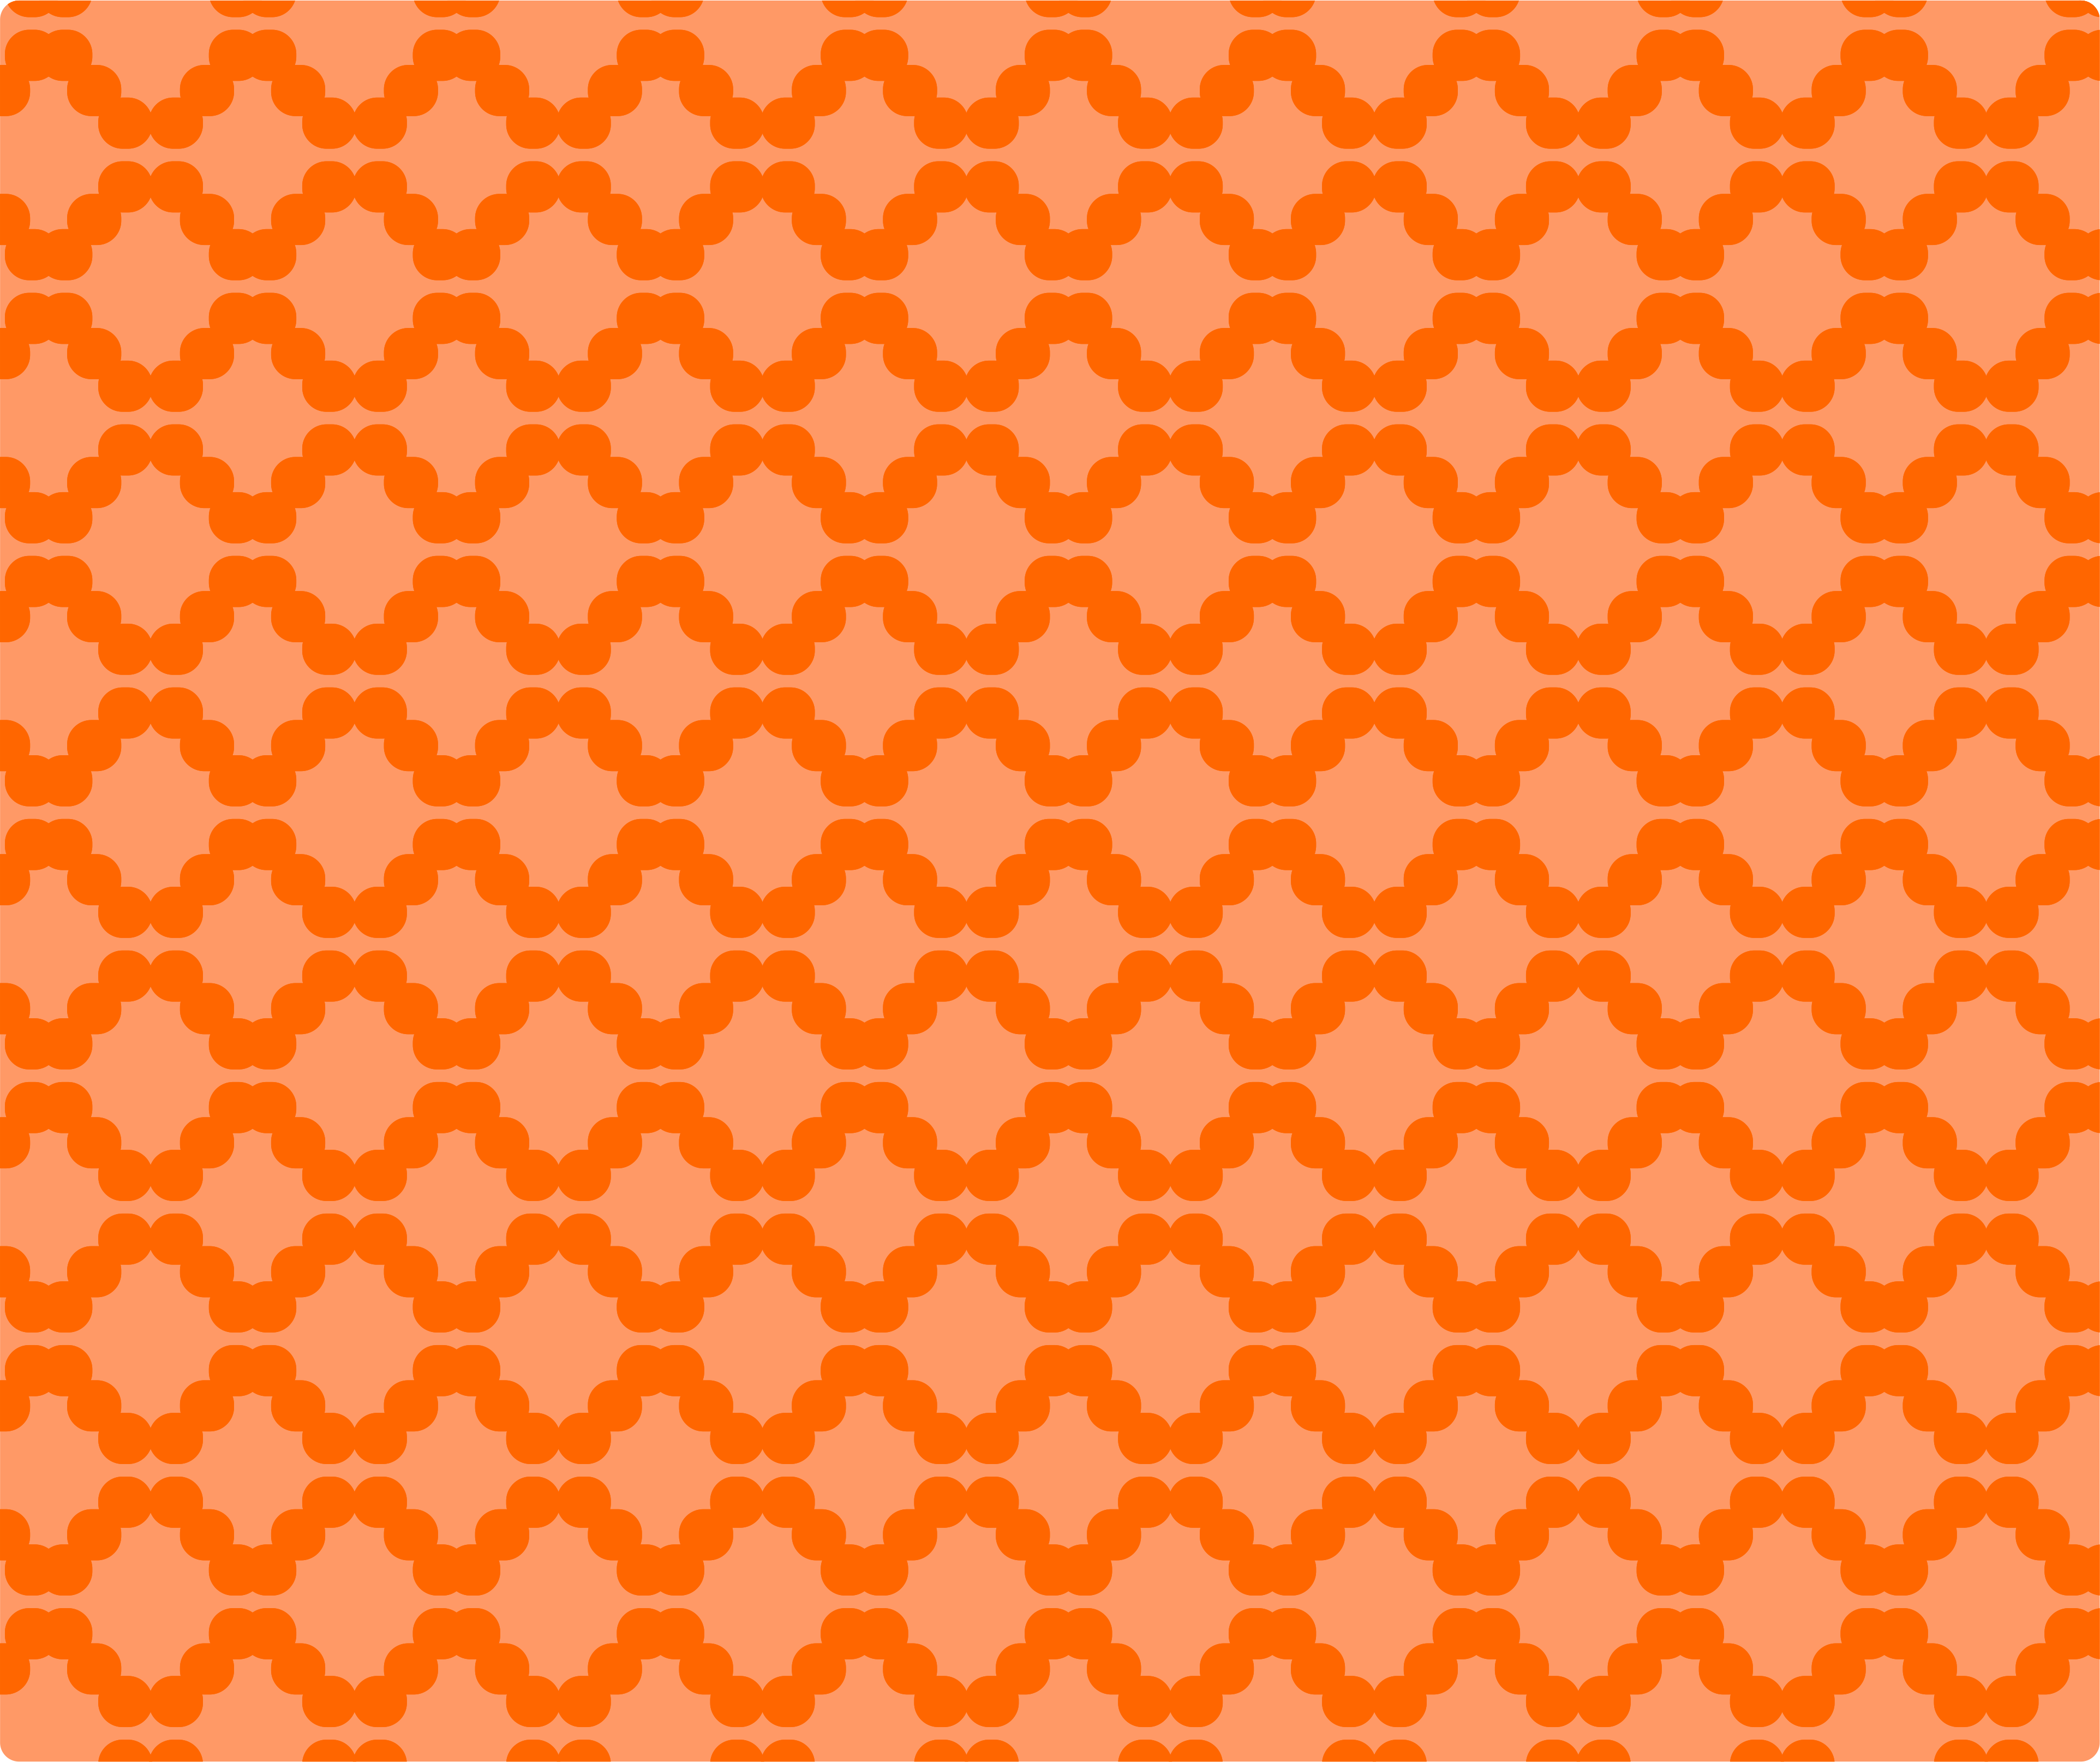 Orange wallpaper with seamless pattern free image download